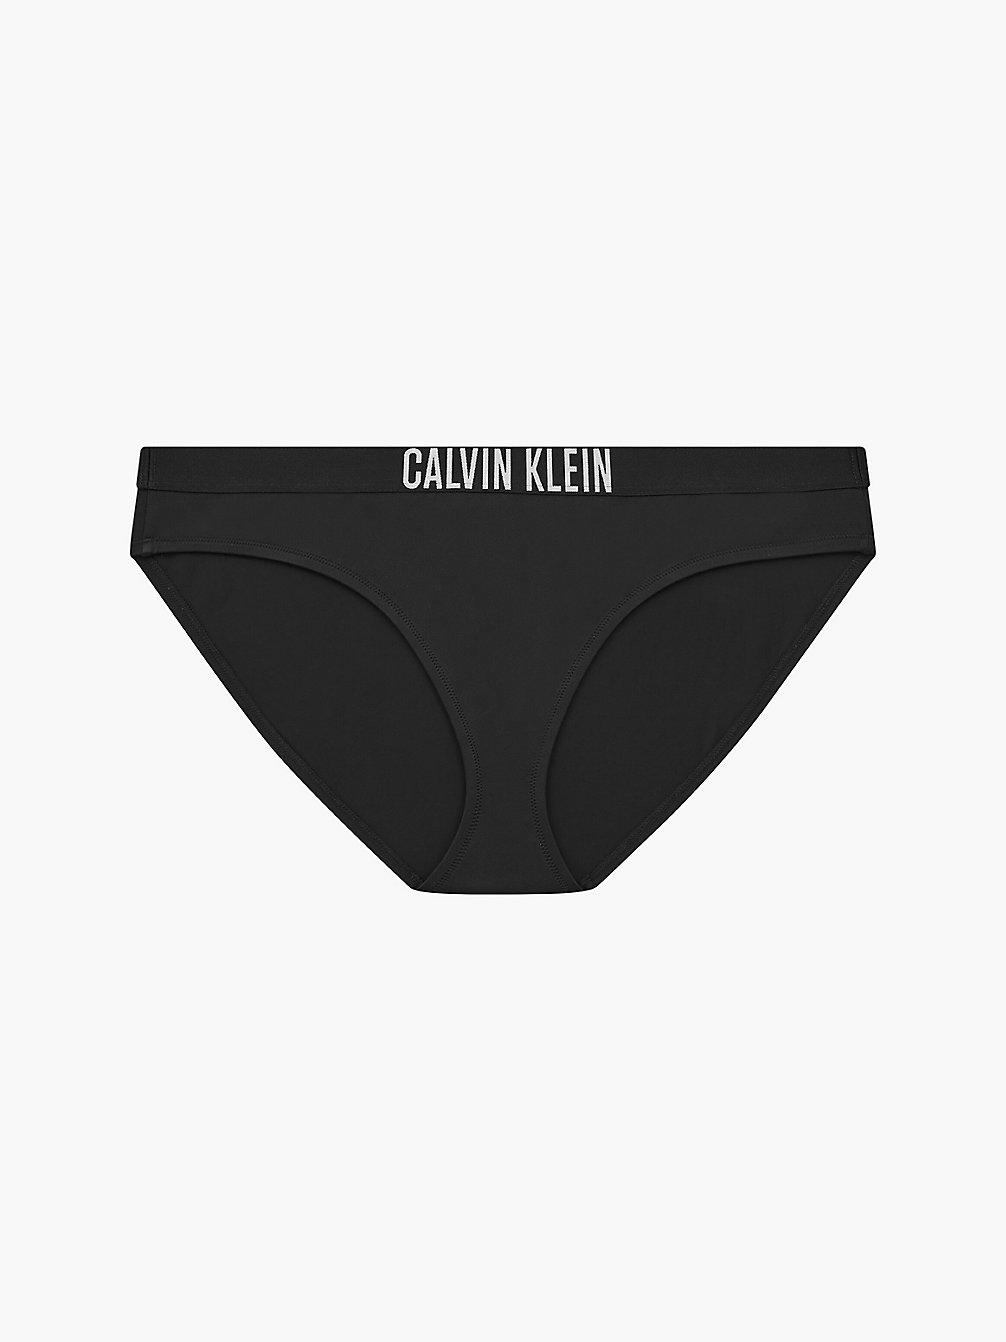 PVH BLACK Bikinihose In Großen Größen - Intense Power undefined Damen Calvin Klein